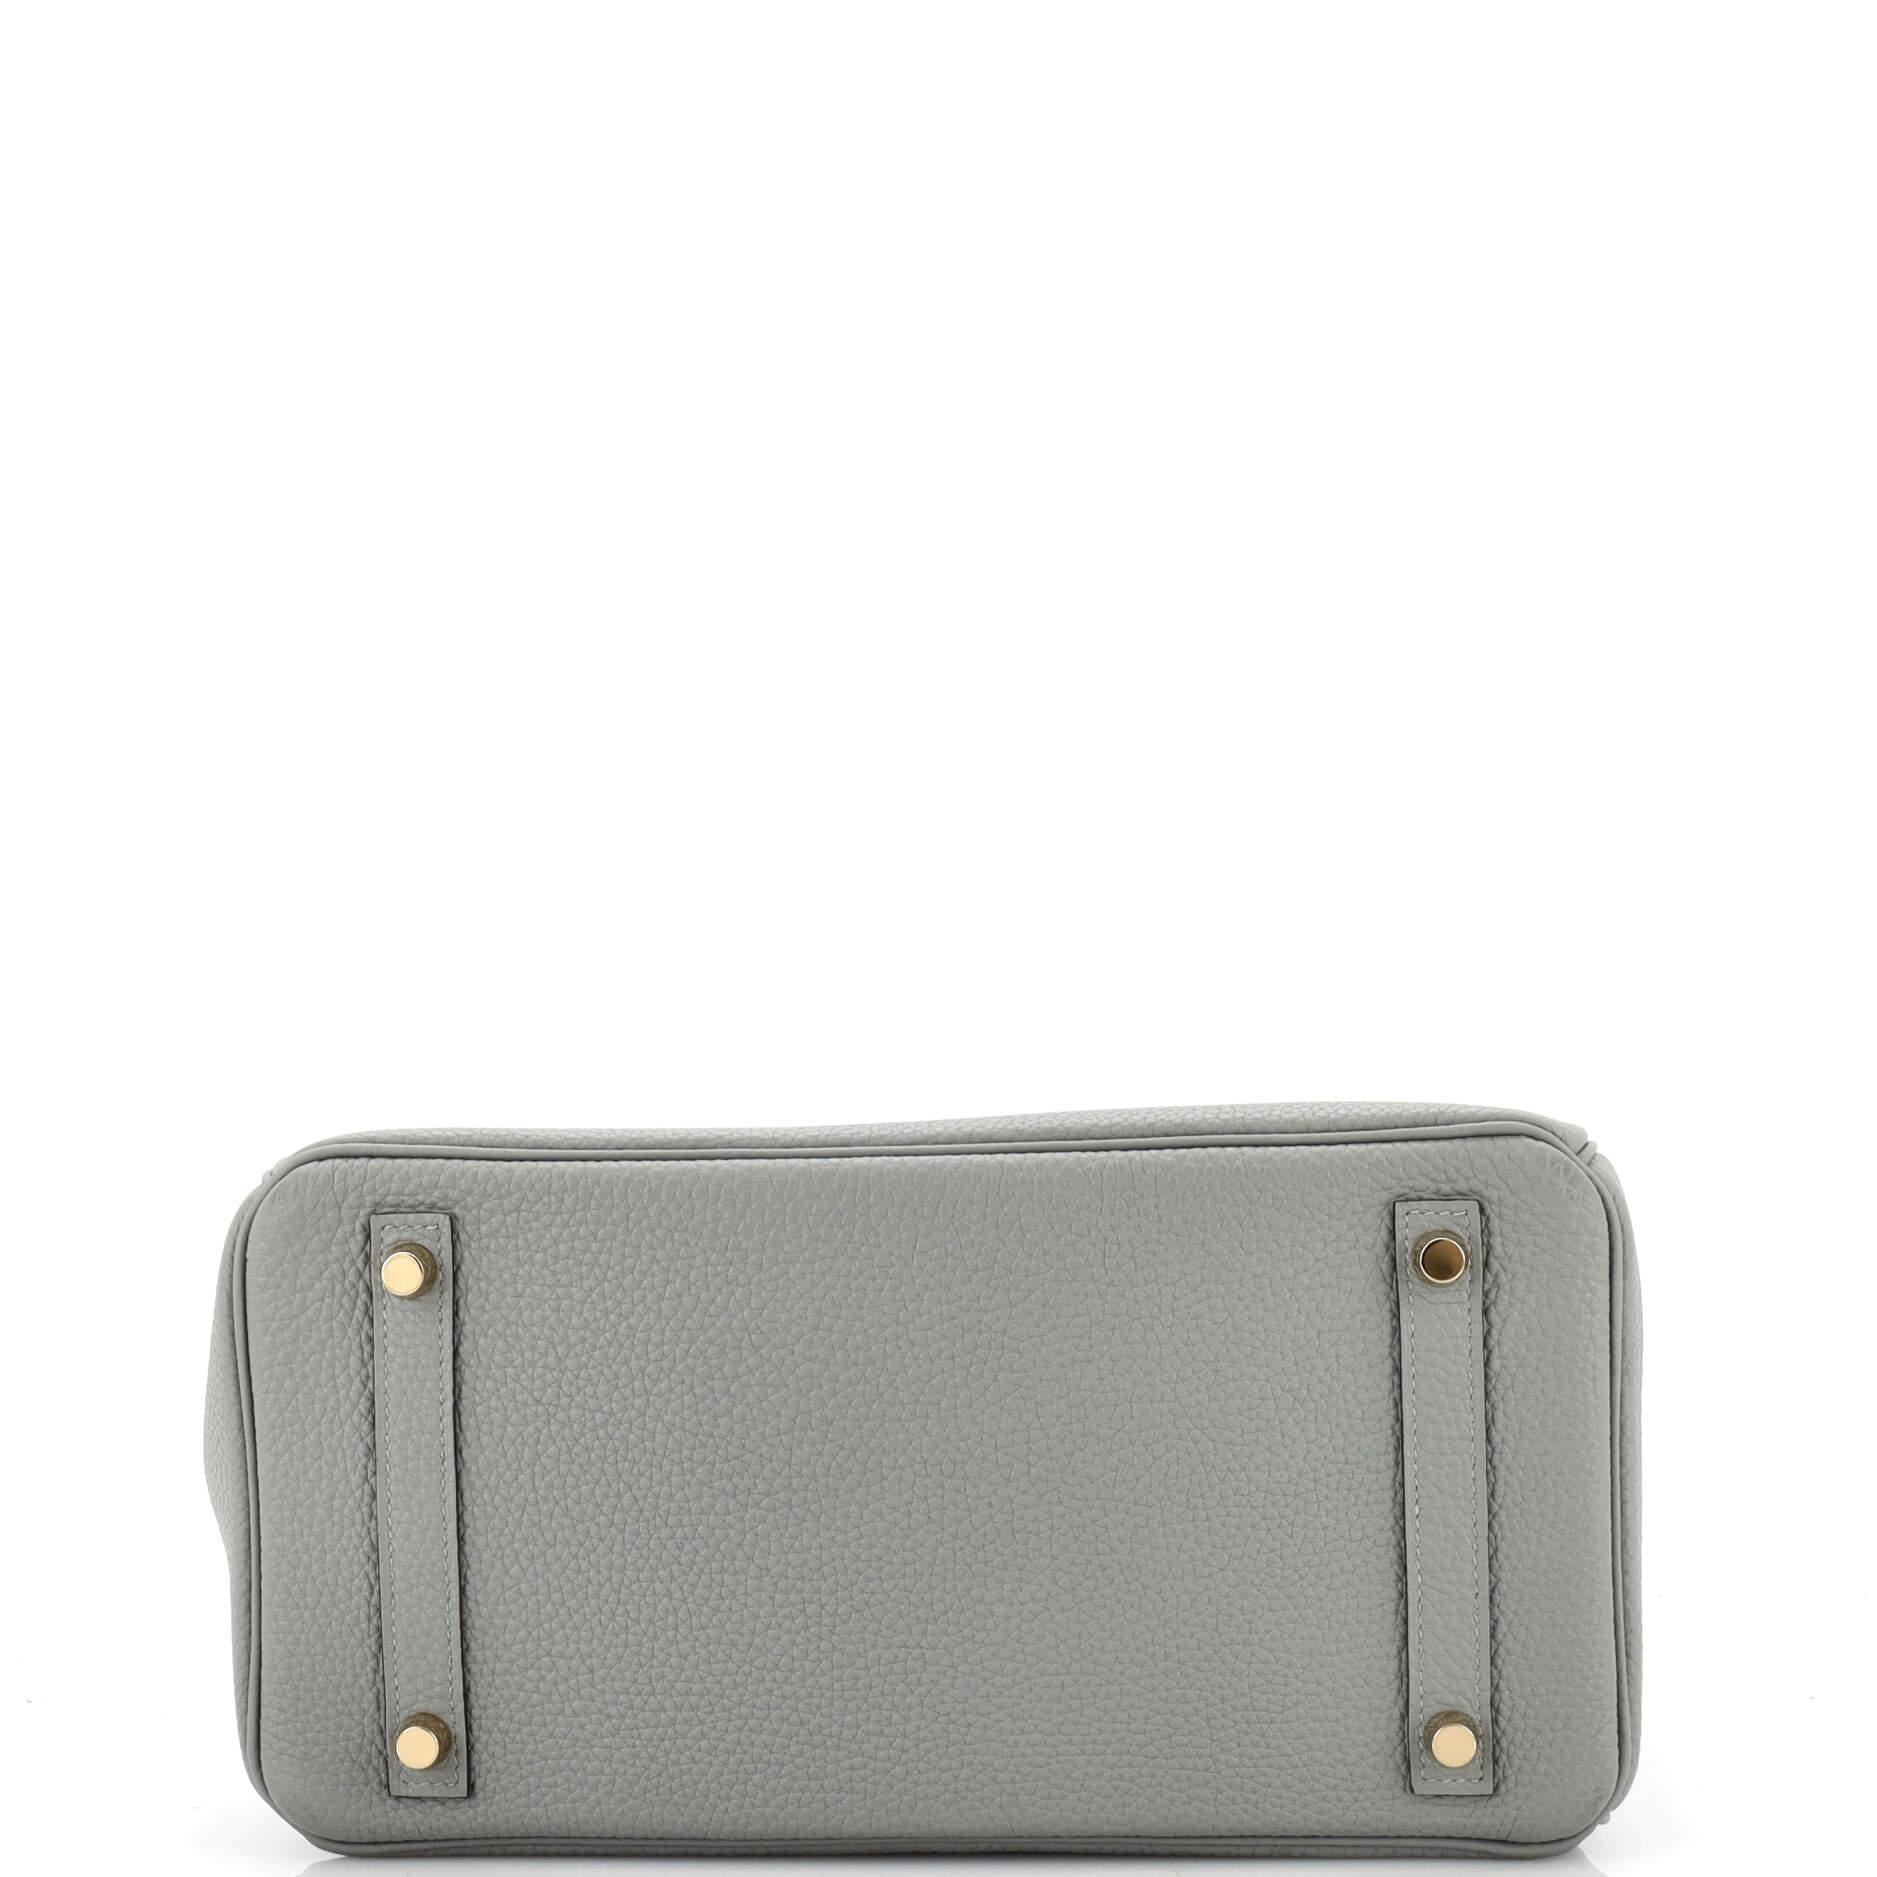 Hermes Birkin Handbag Gris Mouette Togo with Gold Hardware 30 1